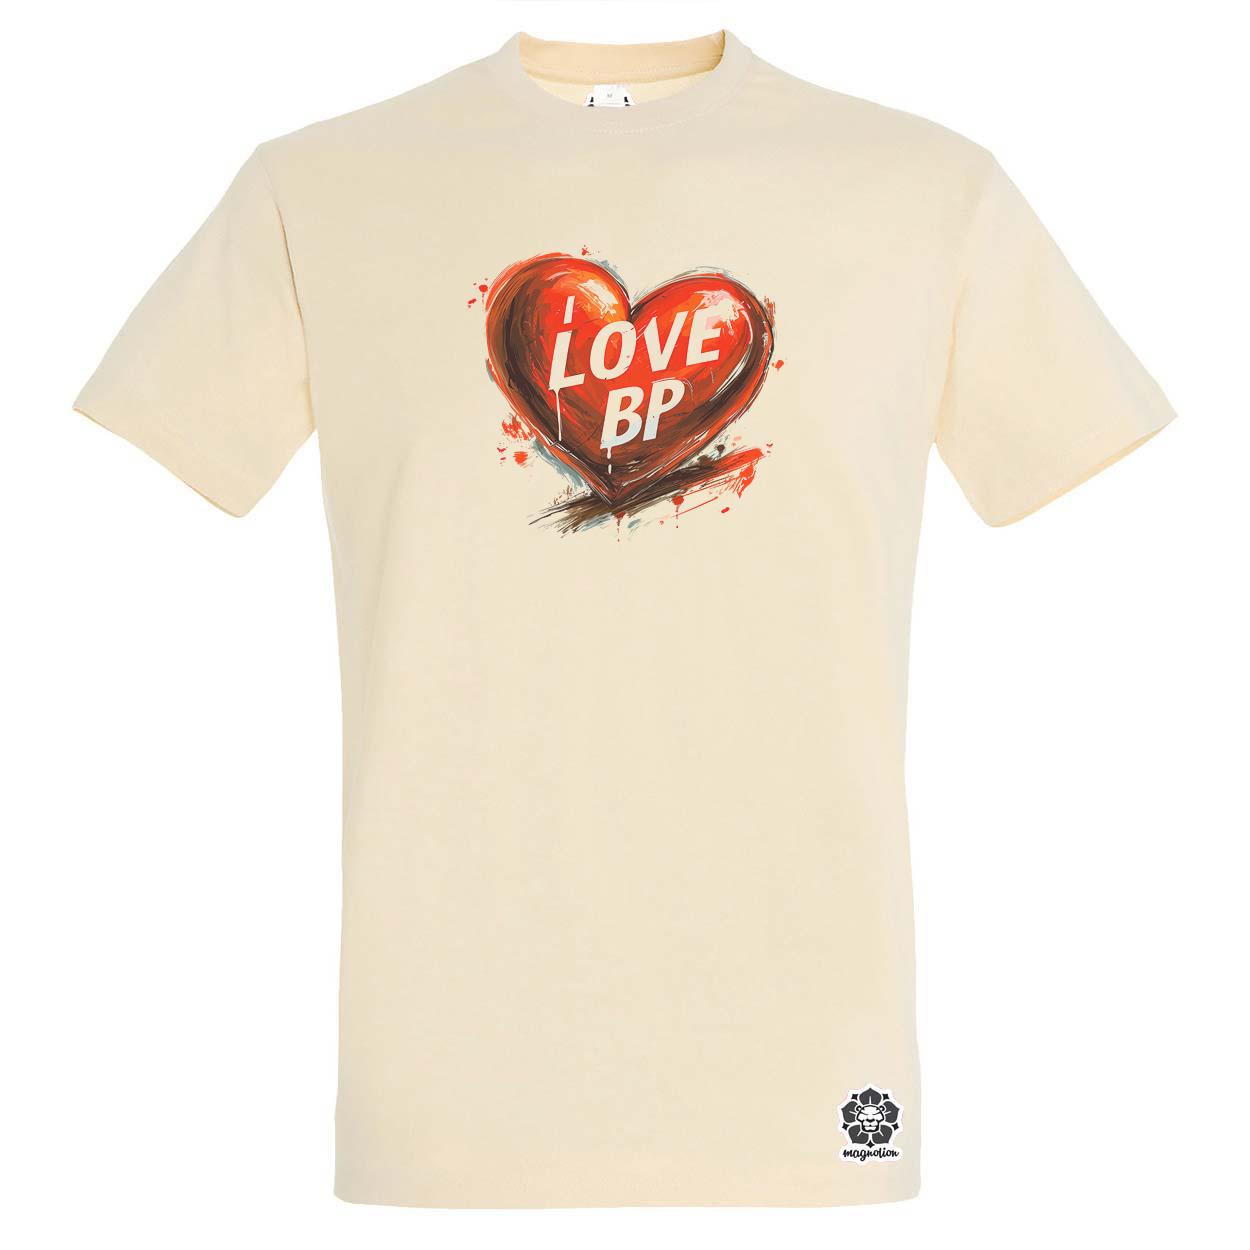 Love BP v15